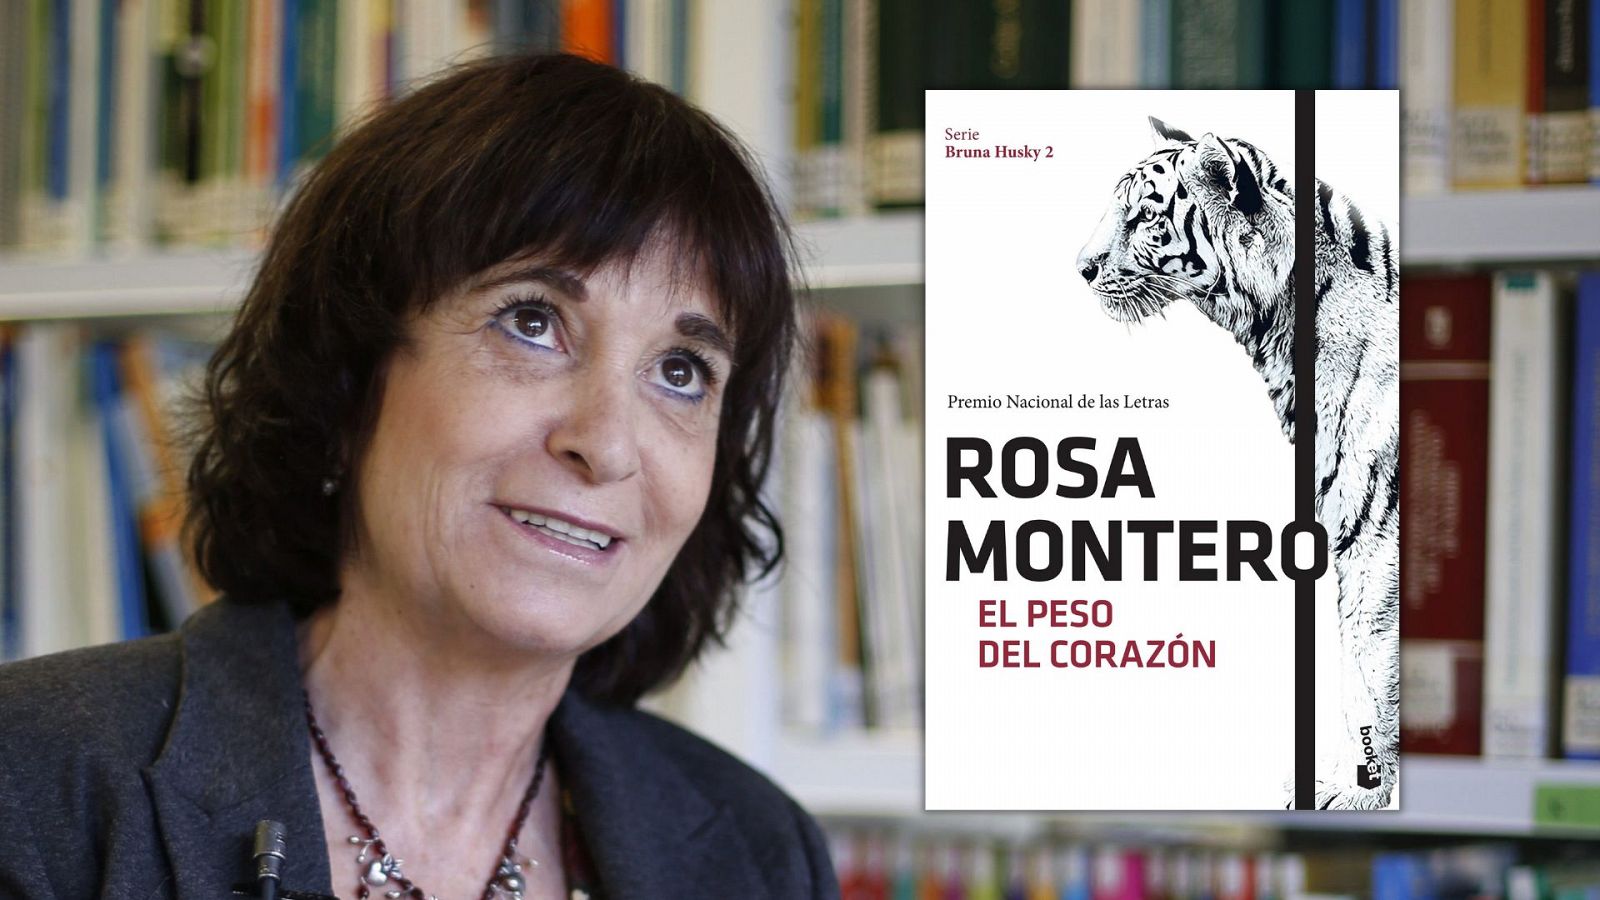 No es un día cualquiera - Rosa Montero y 'El peso del corazón': "El amor no solo no te debilita sino que te permite vivir una vida que merezca llamarse vida" - Escuchar ahora